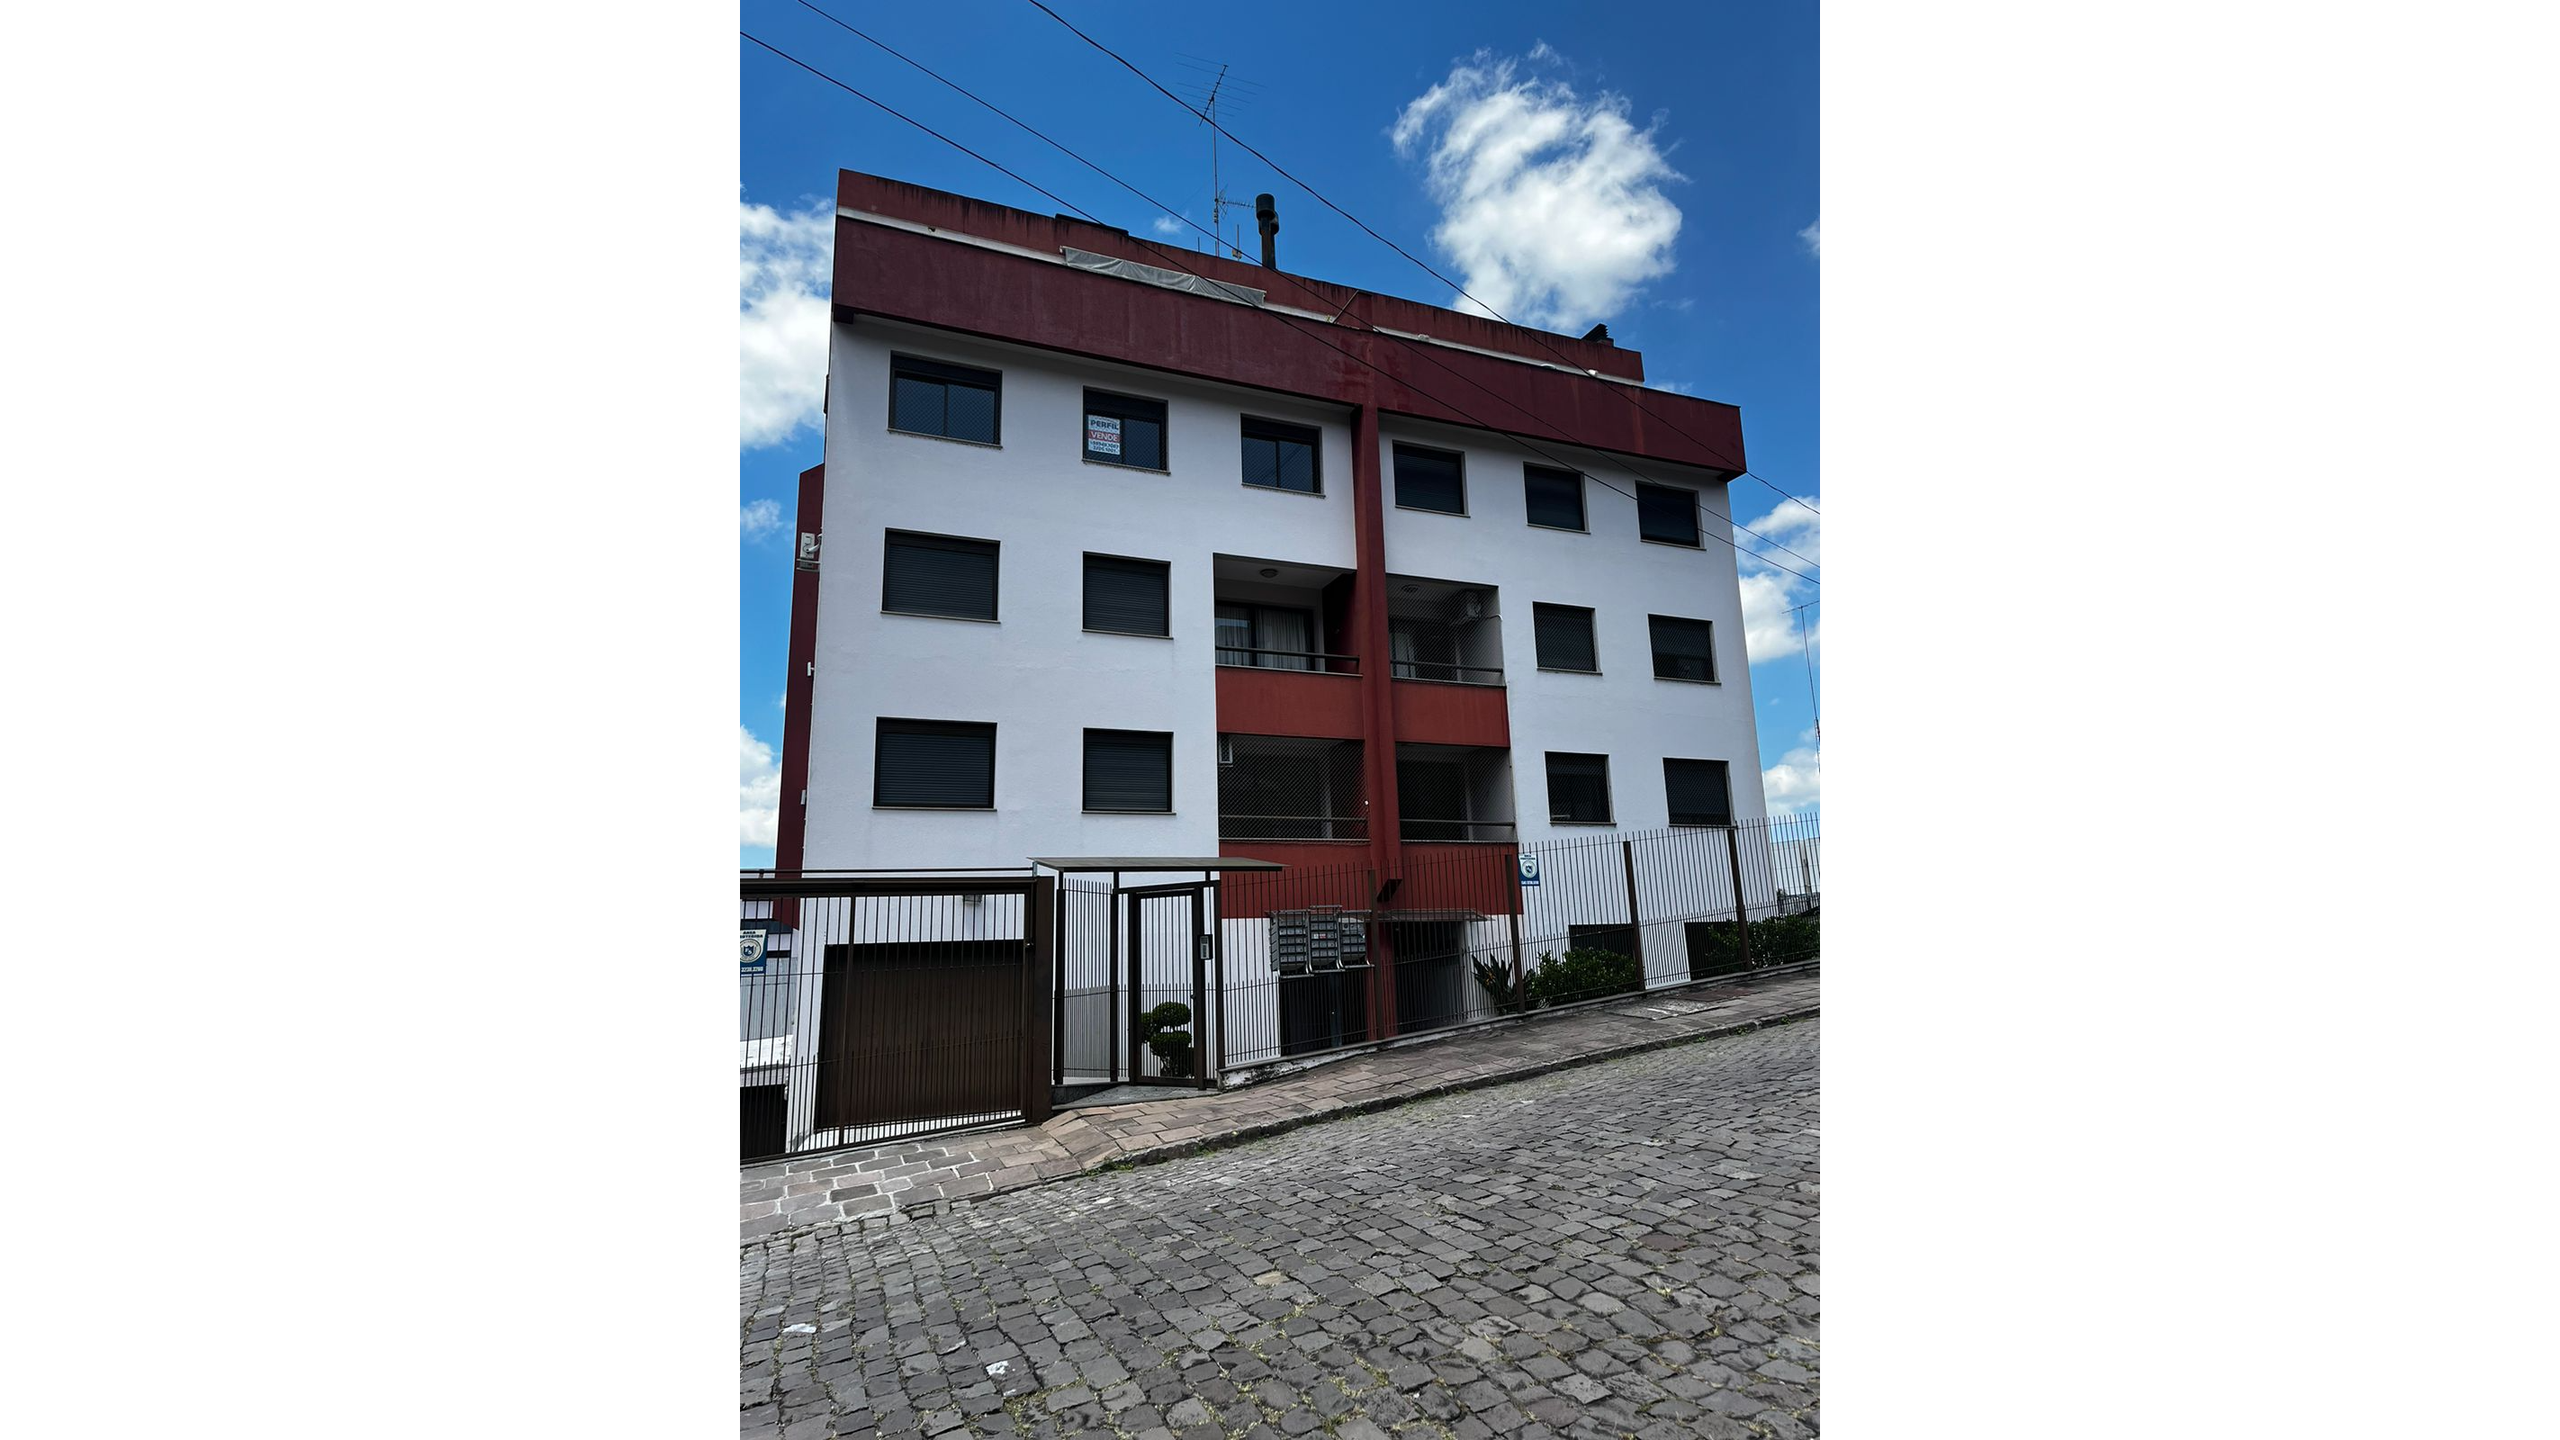 Apartamento 3 quartos sendo 1 suíte para venda no bairro Cruzeiro em Caxias do Sul